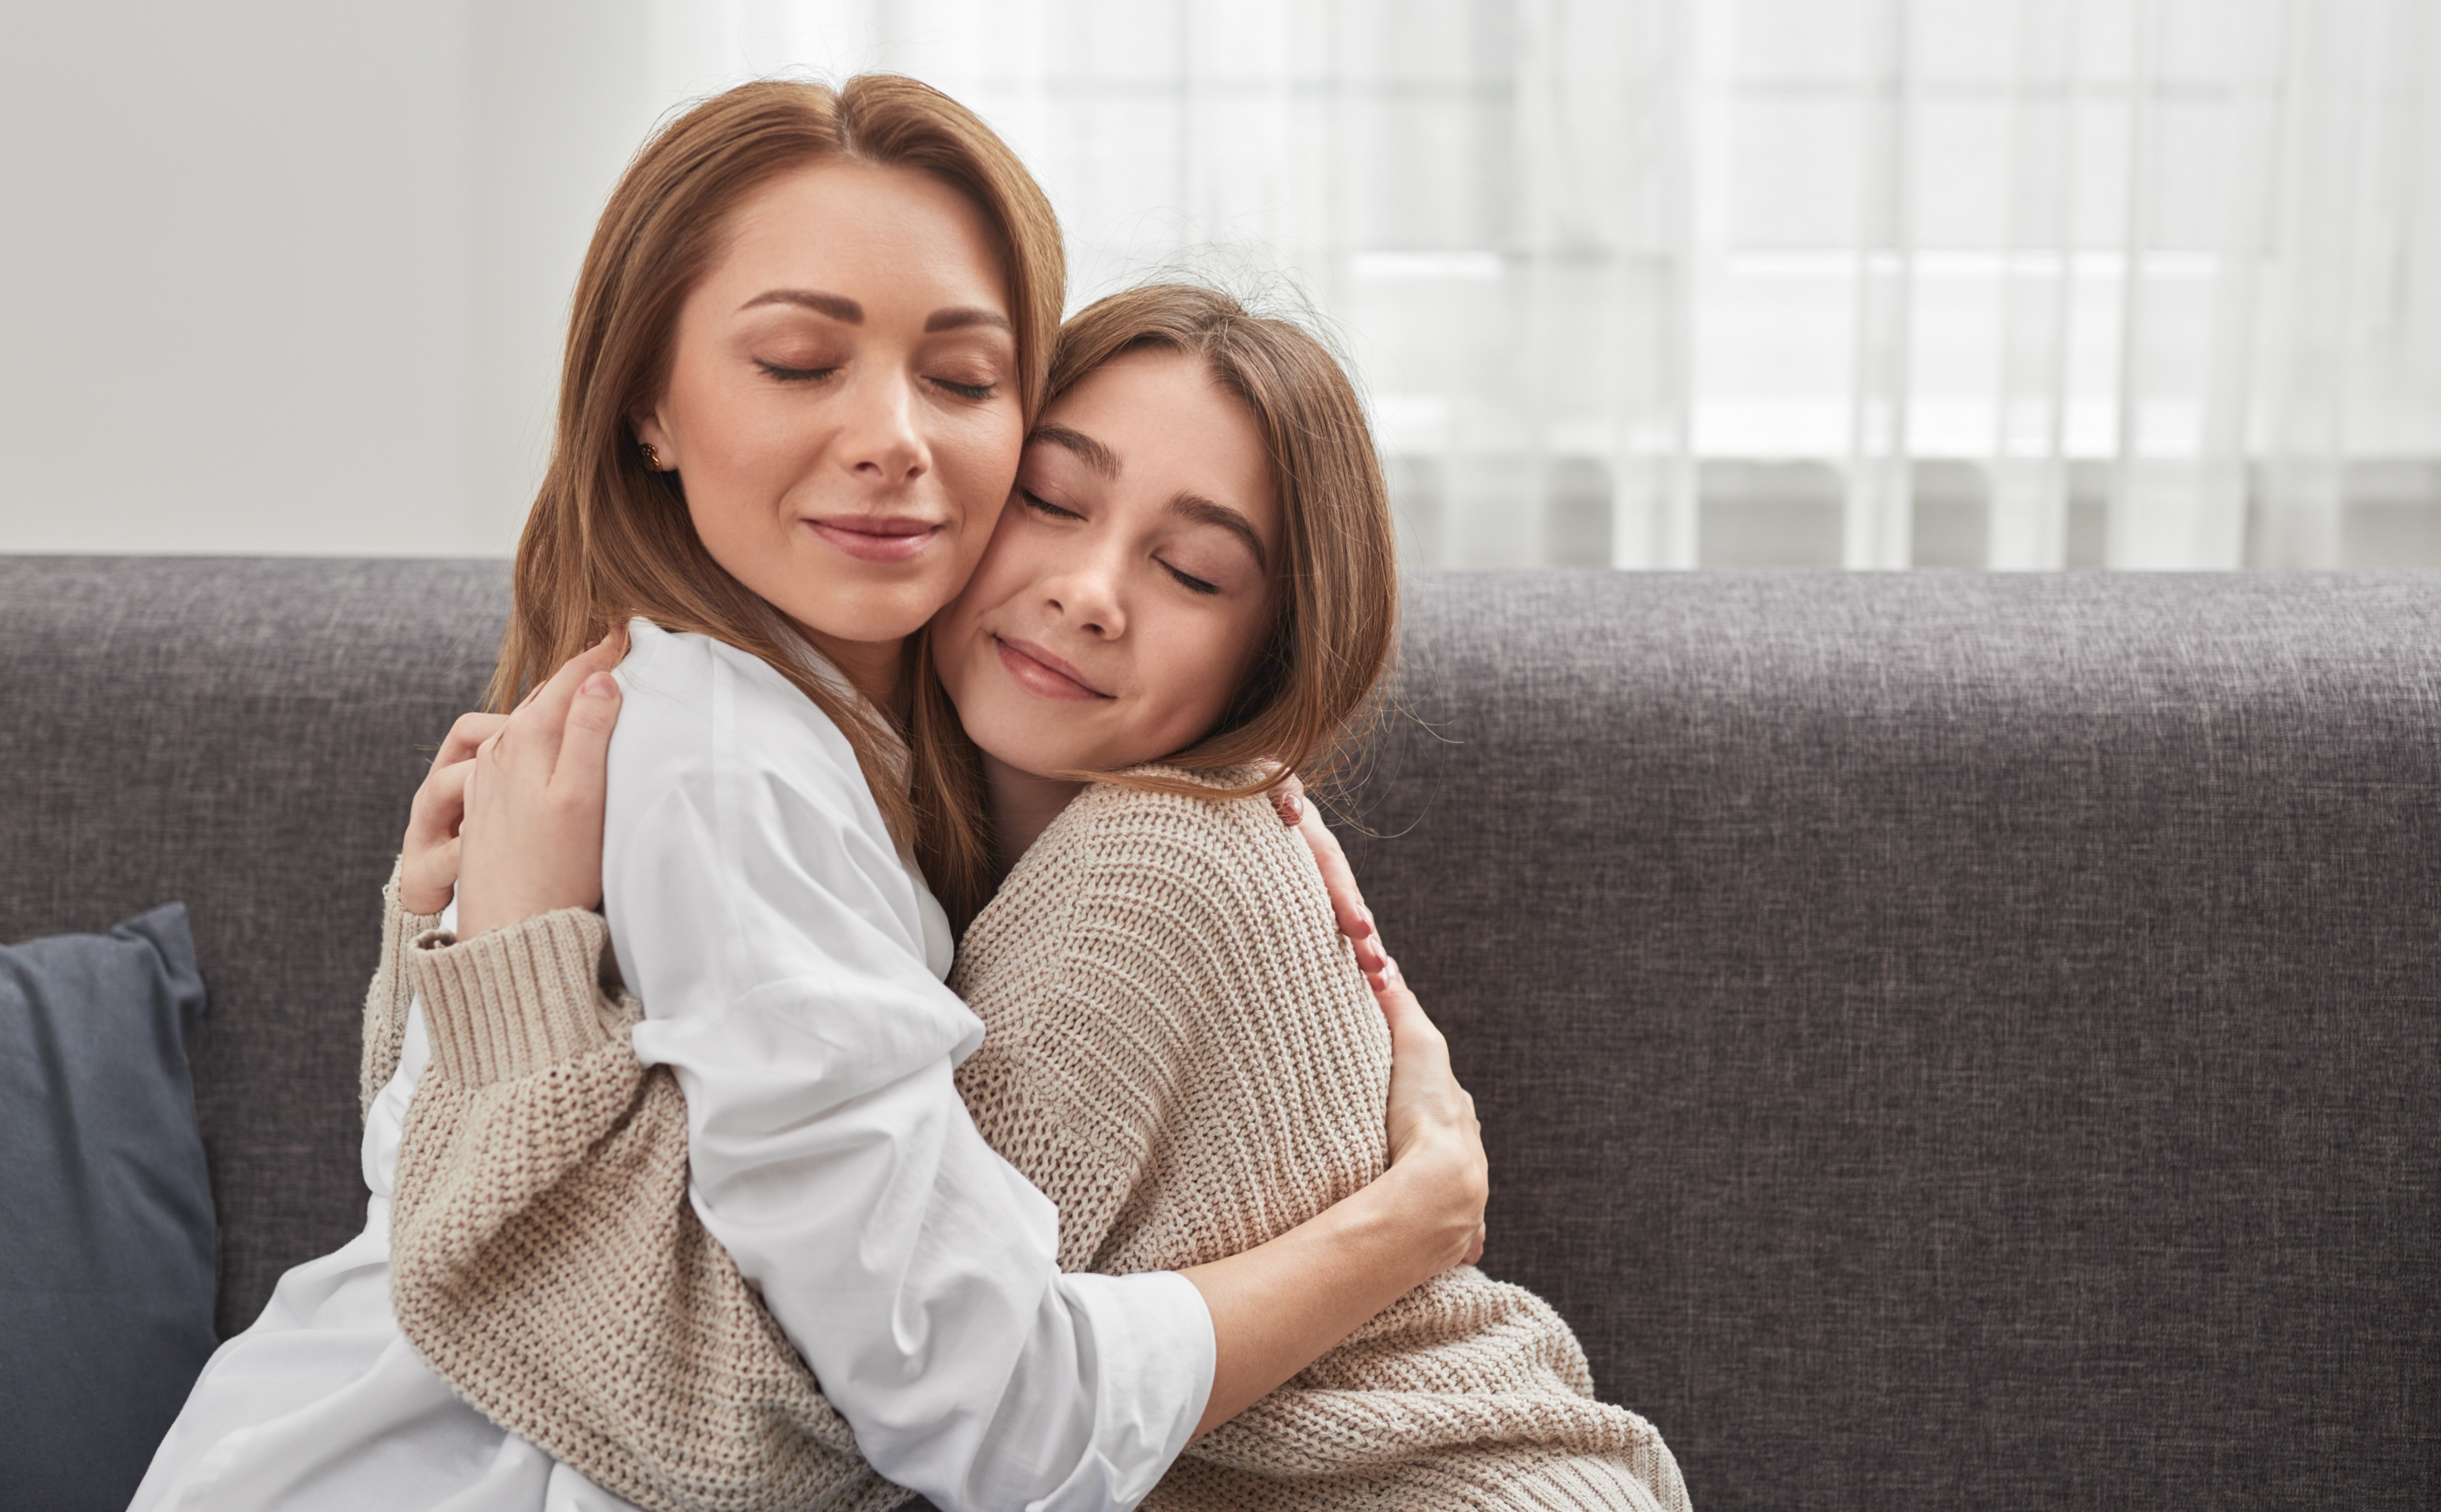 Mutter, die ihre Teenager-Tochter umarmt | Quelle: Shutterstock